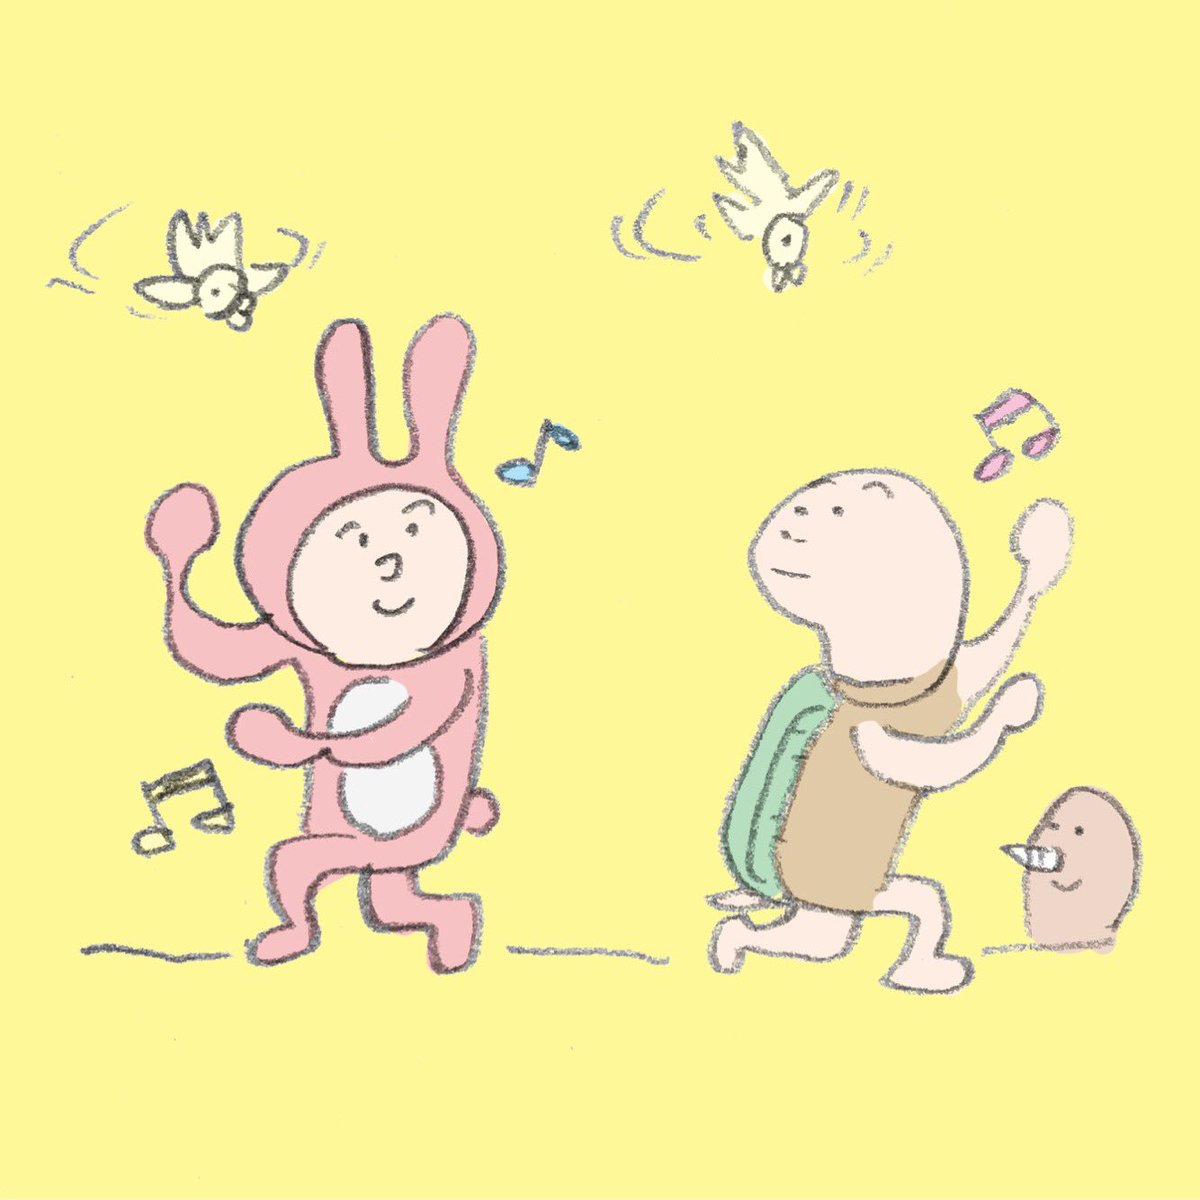 おも満しろ太郎 V Twitter ウサギとカメのダンス Dance ウサギ うさぎ 兎 Rabbit カメ 亀 かめ Turtle モグラ もぐら イラスト Illustration キャラクター Character Comic Manga おも満しろ太郎 T Co Epgmvabw8w